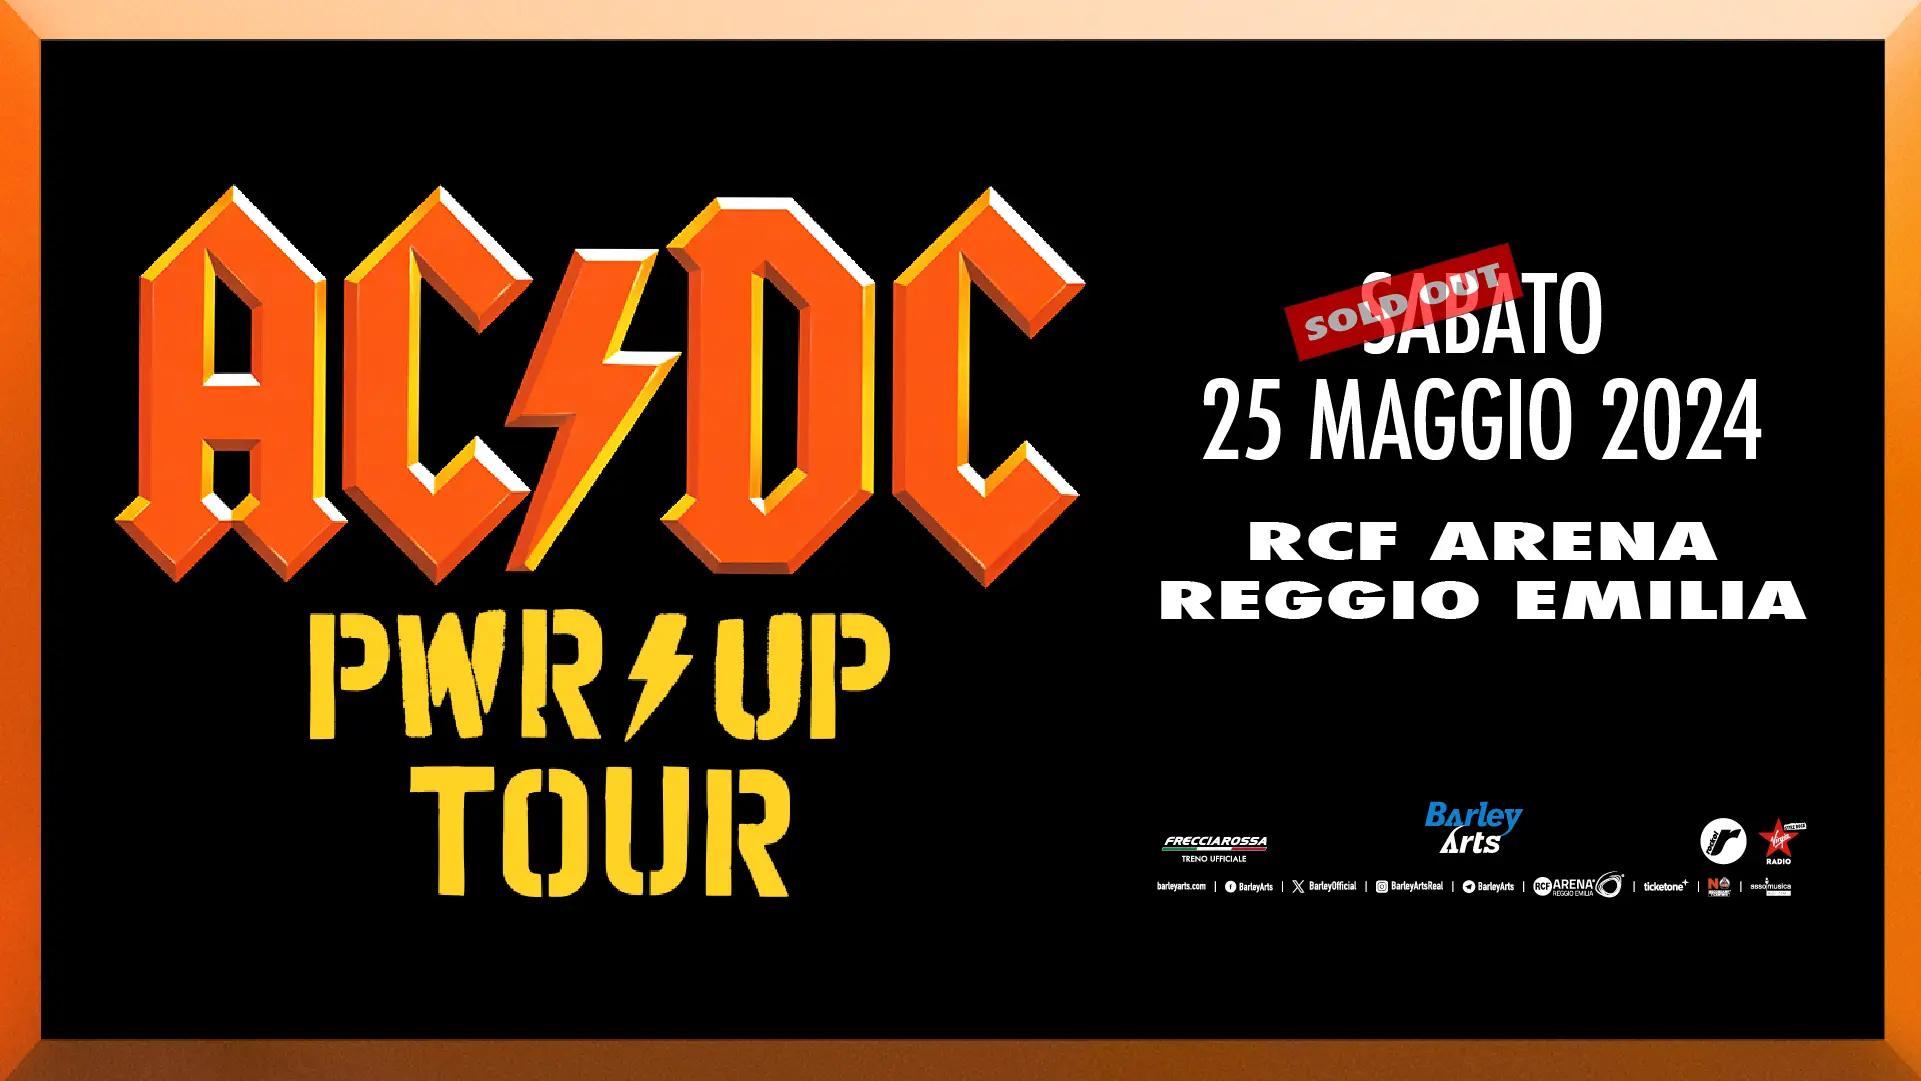 Sold out degli AC/DC!